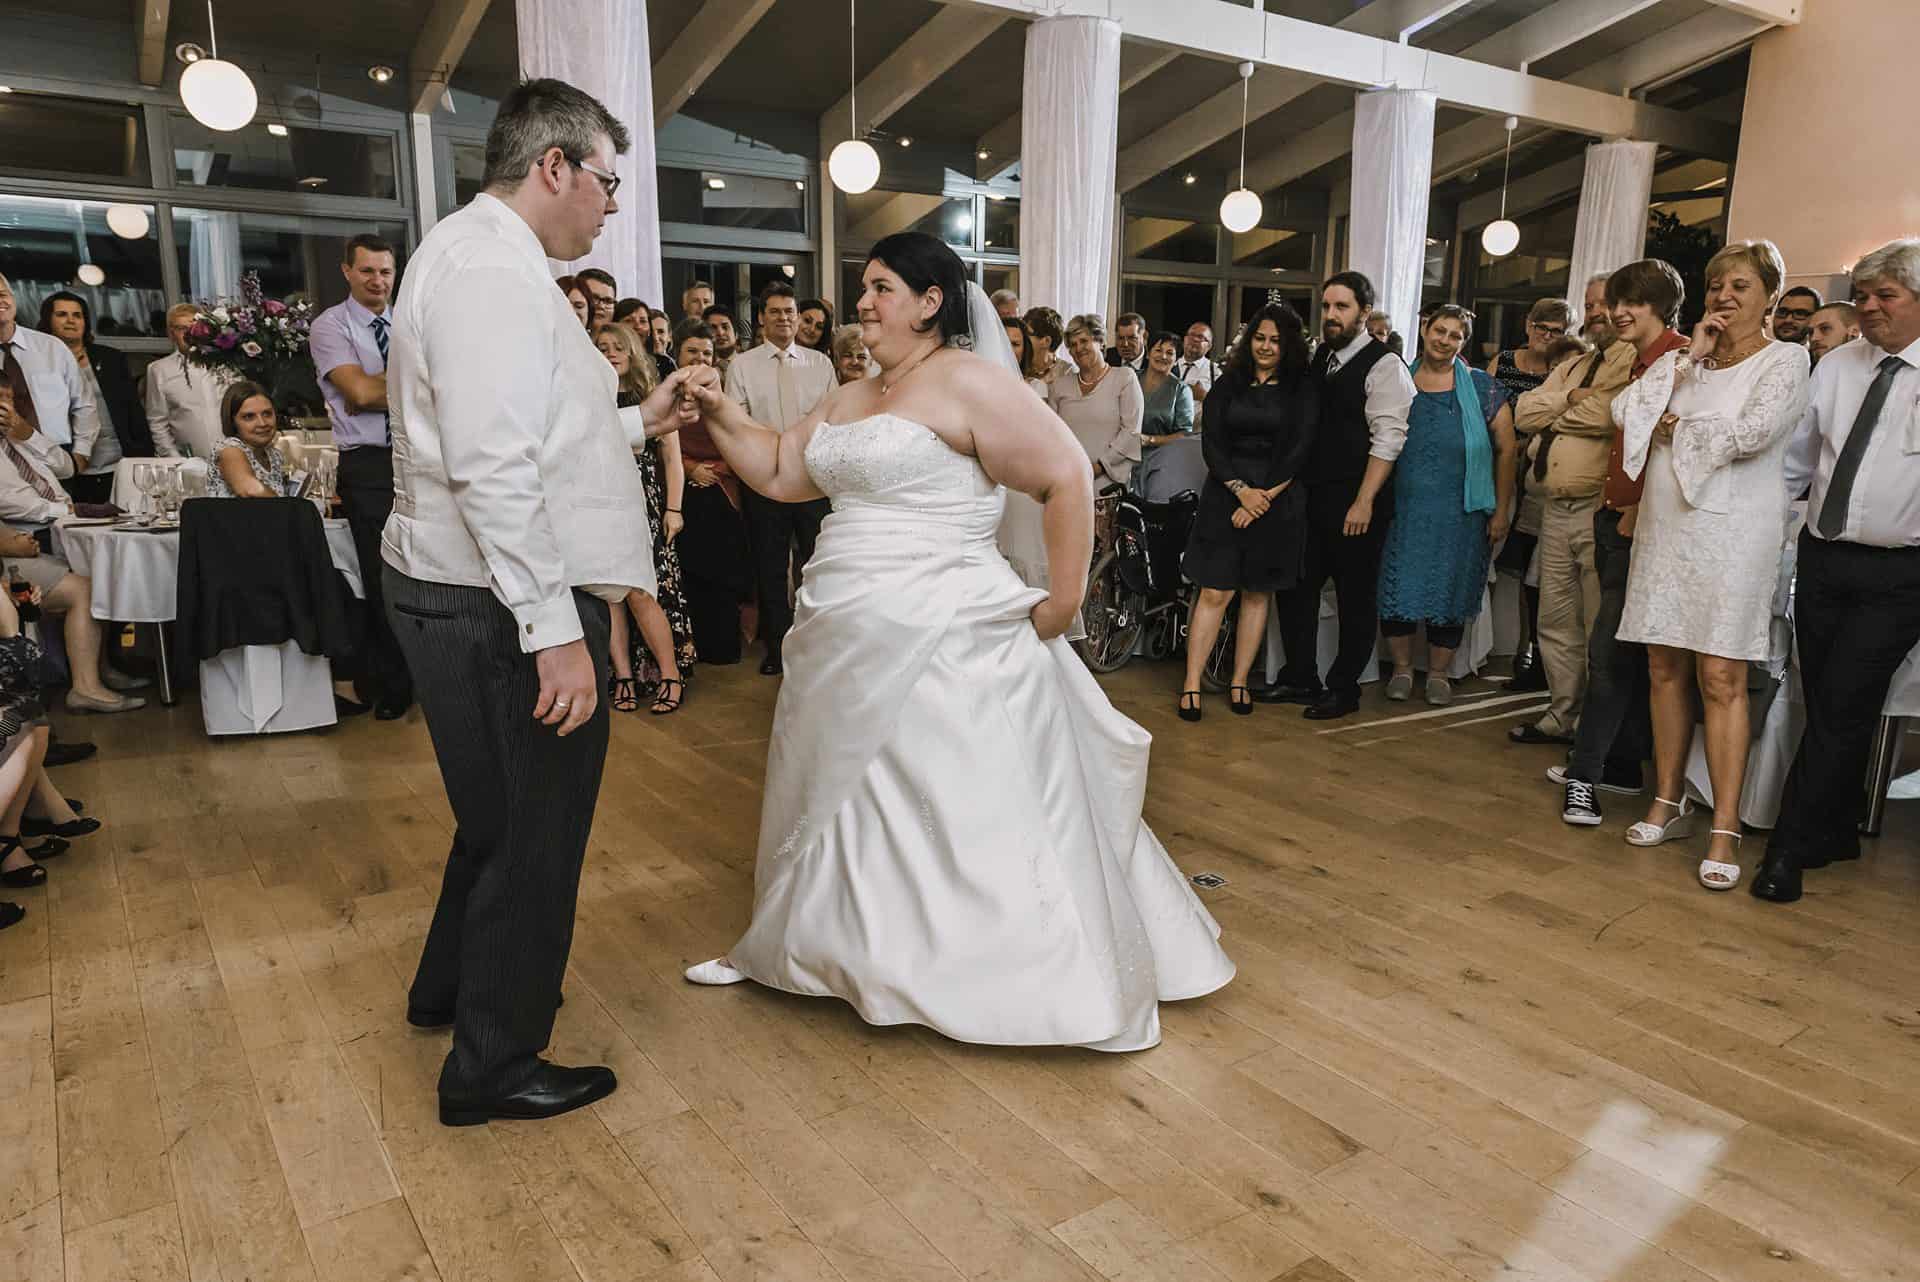 Eine Braut und ein Bräutigam teilen ihren ersten Tanz bei einer Hochzeitsfeier.